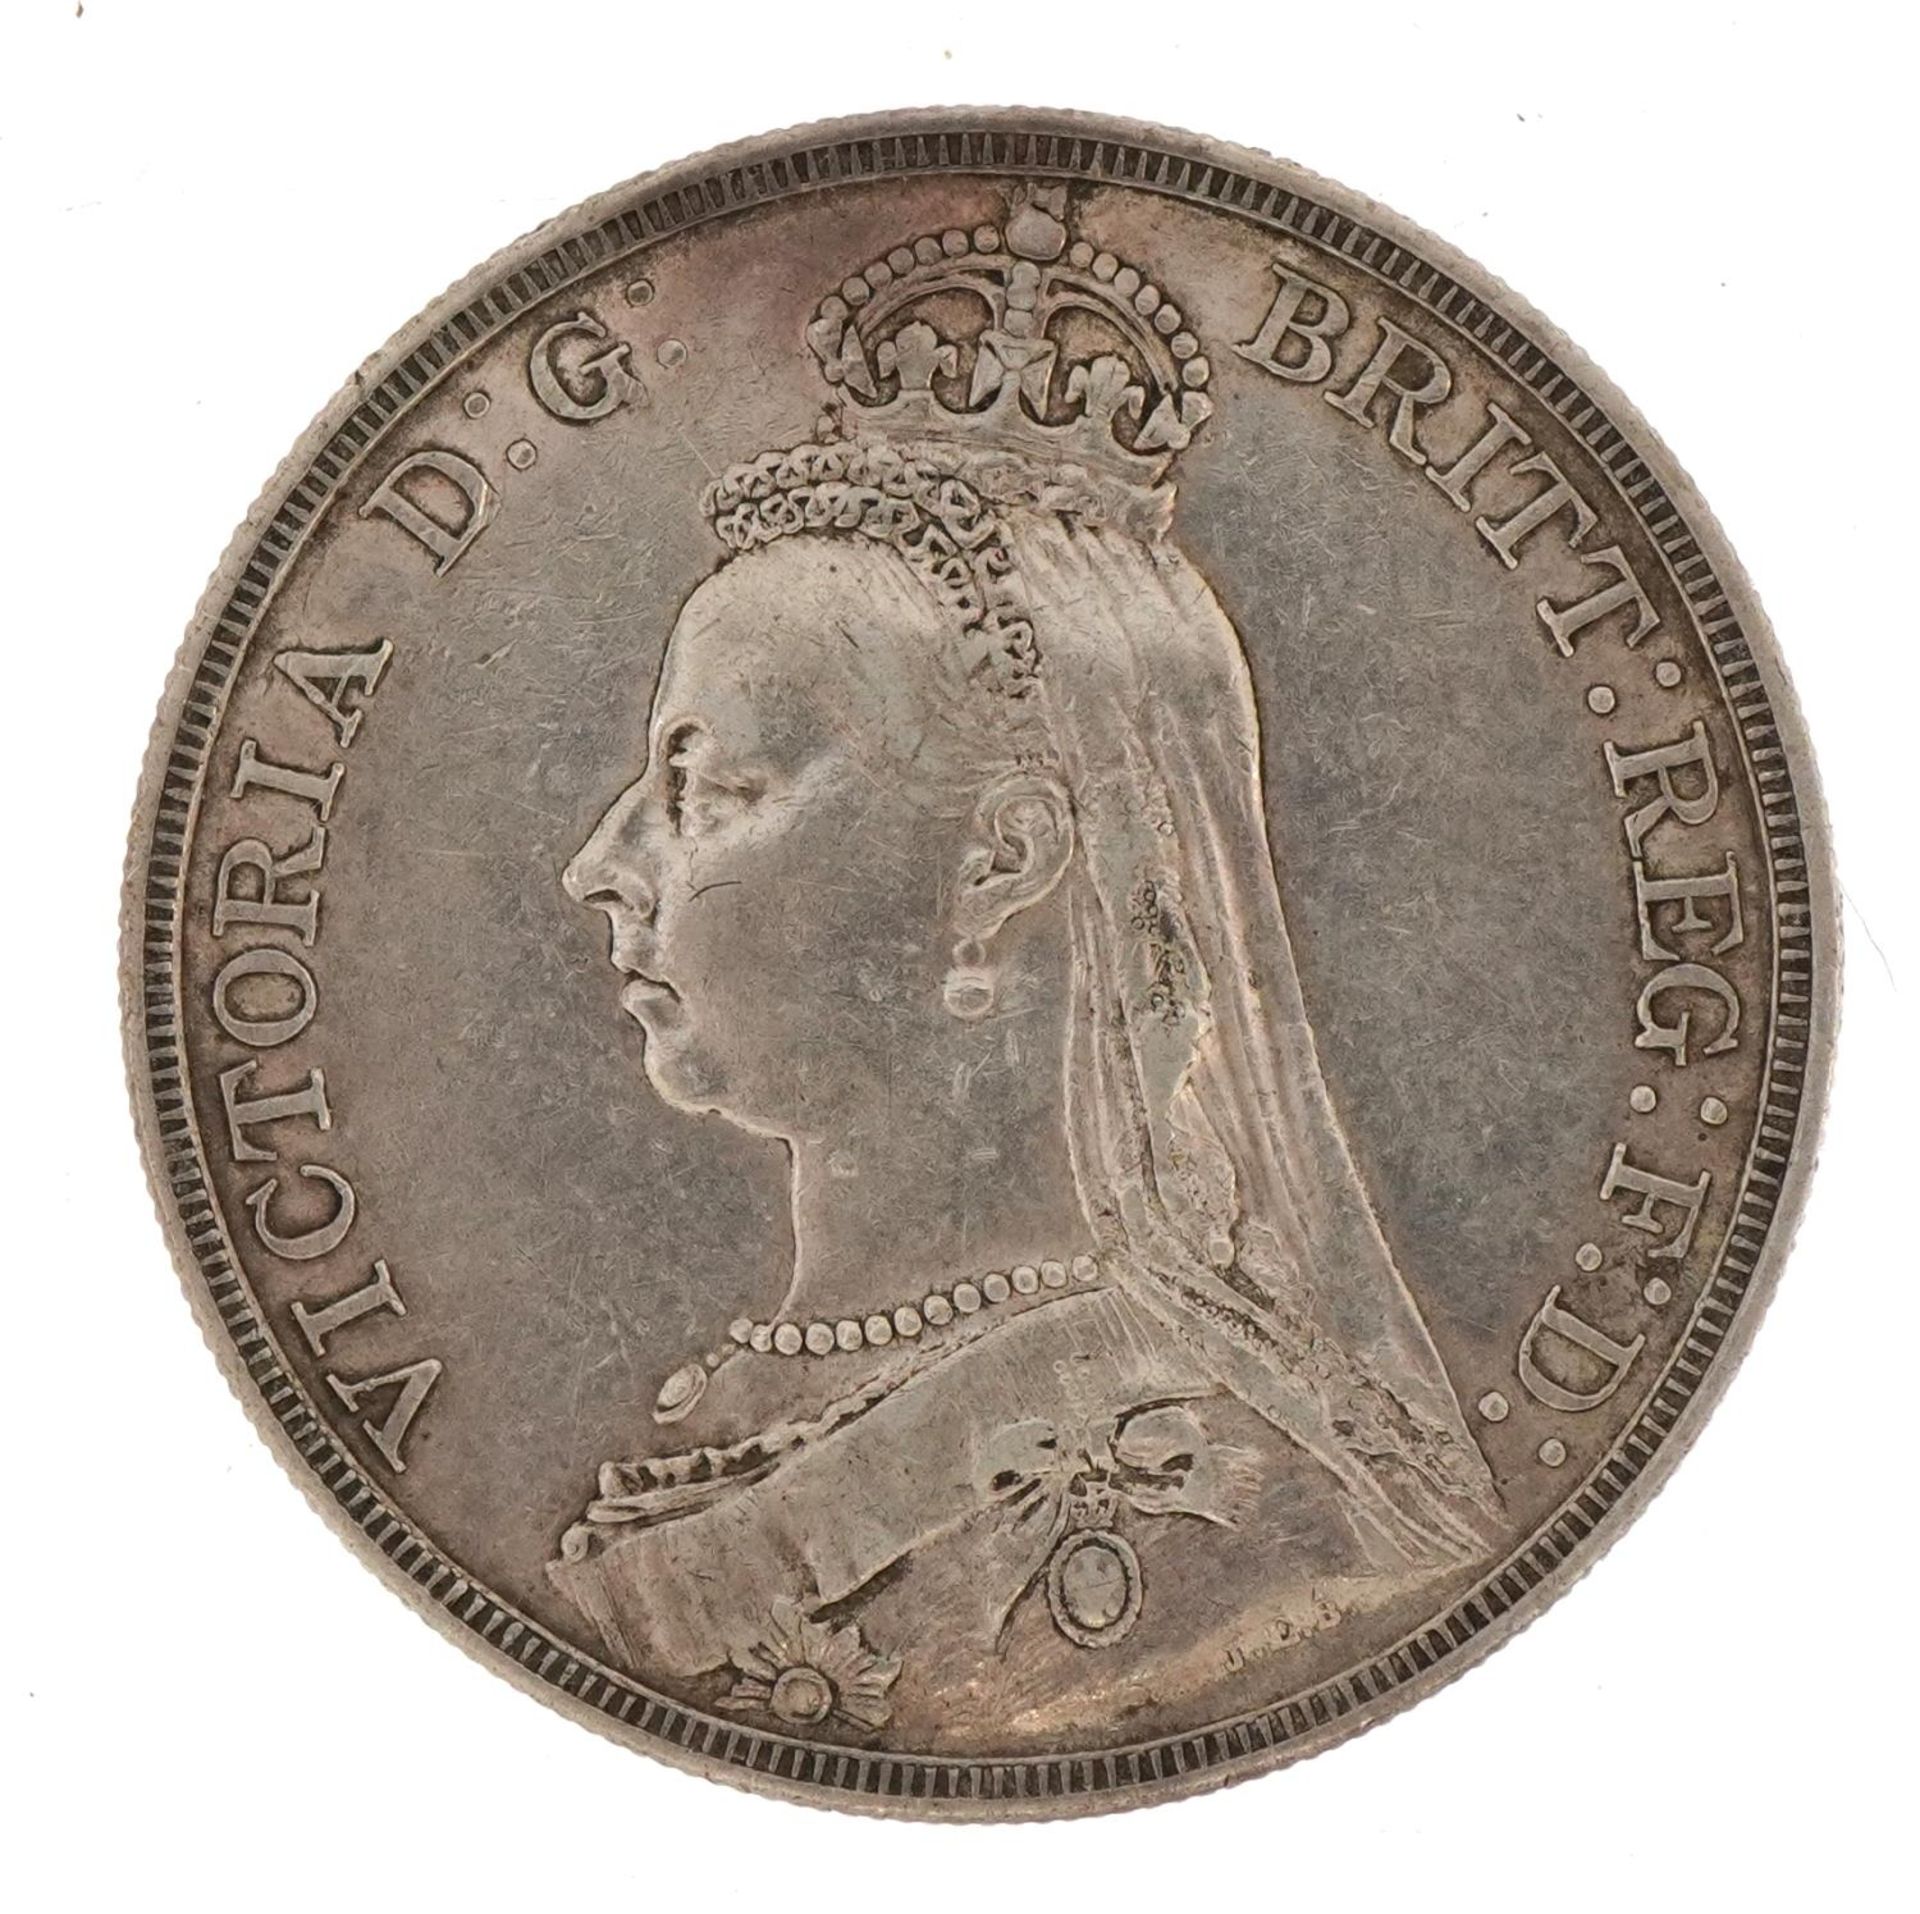 Queen Victoria 1887 crown - Image 2 of 2